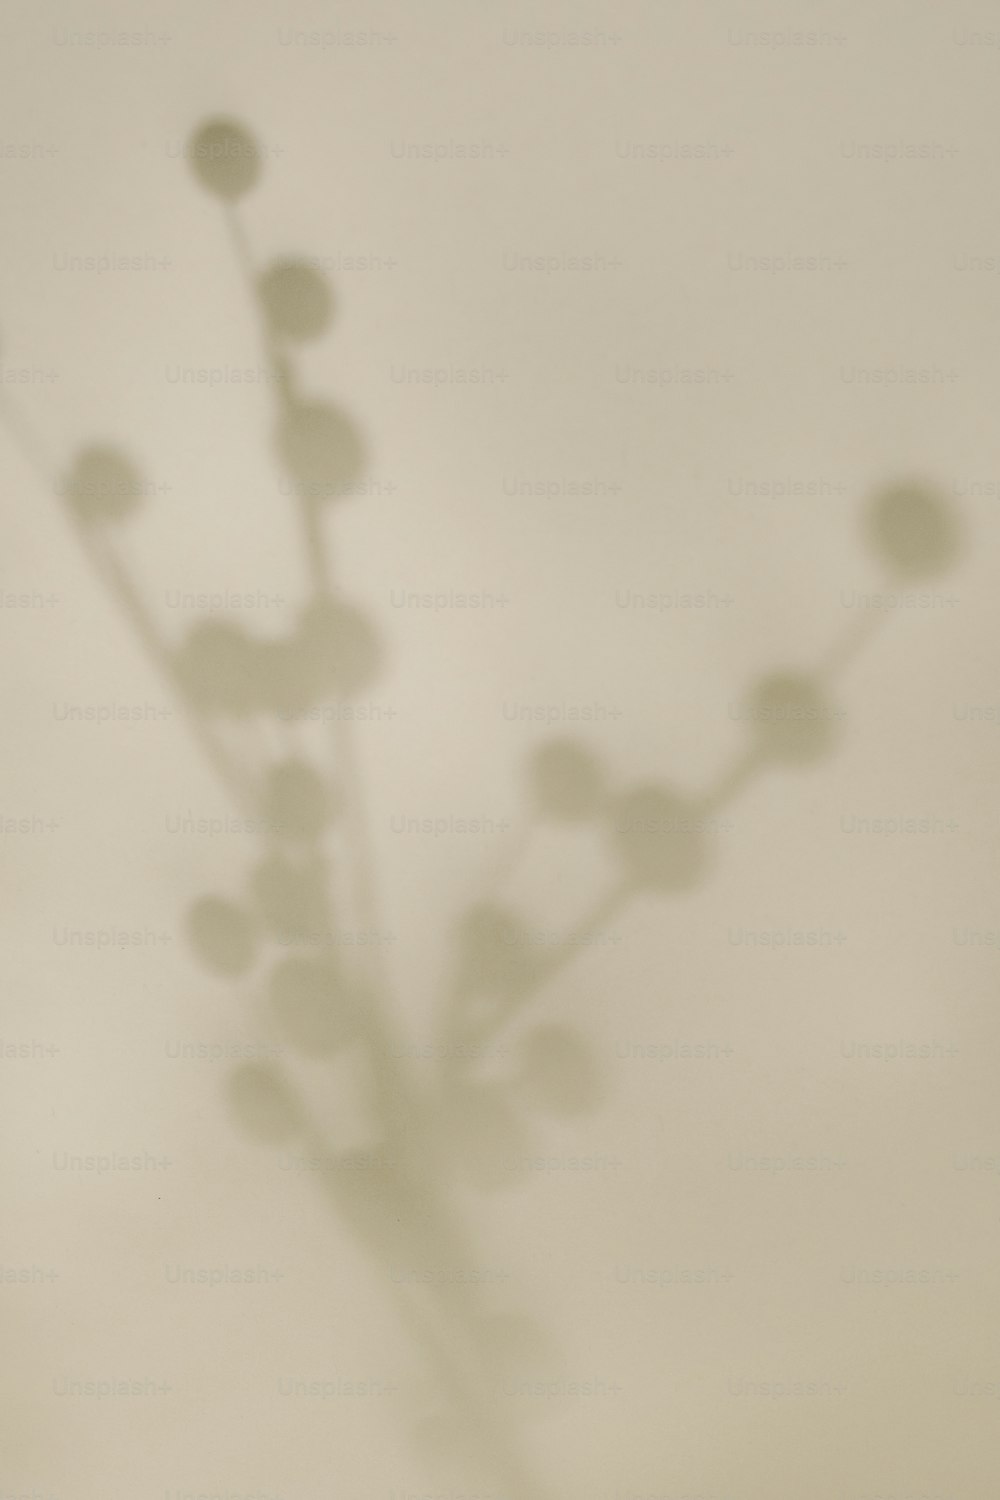 Der Schatten einer Pflanze an einer Wand